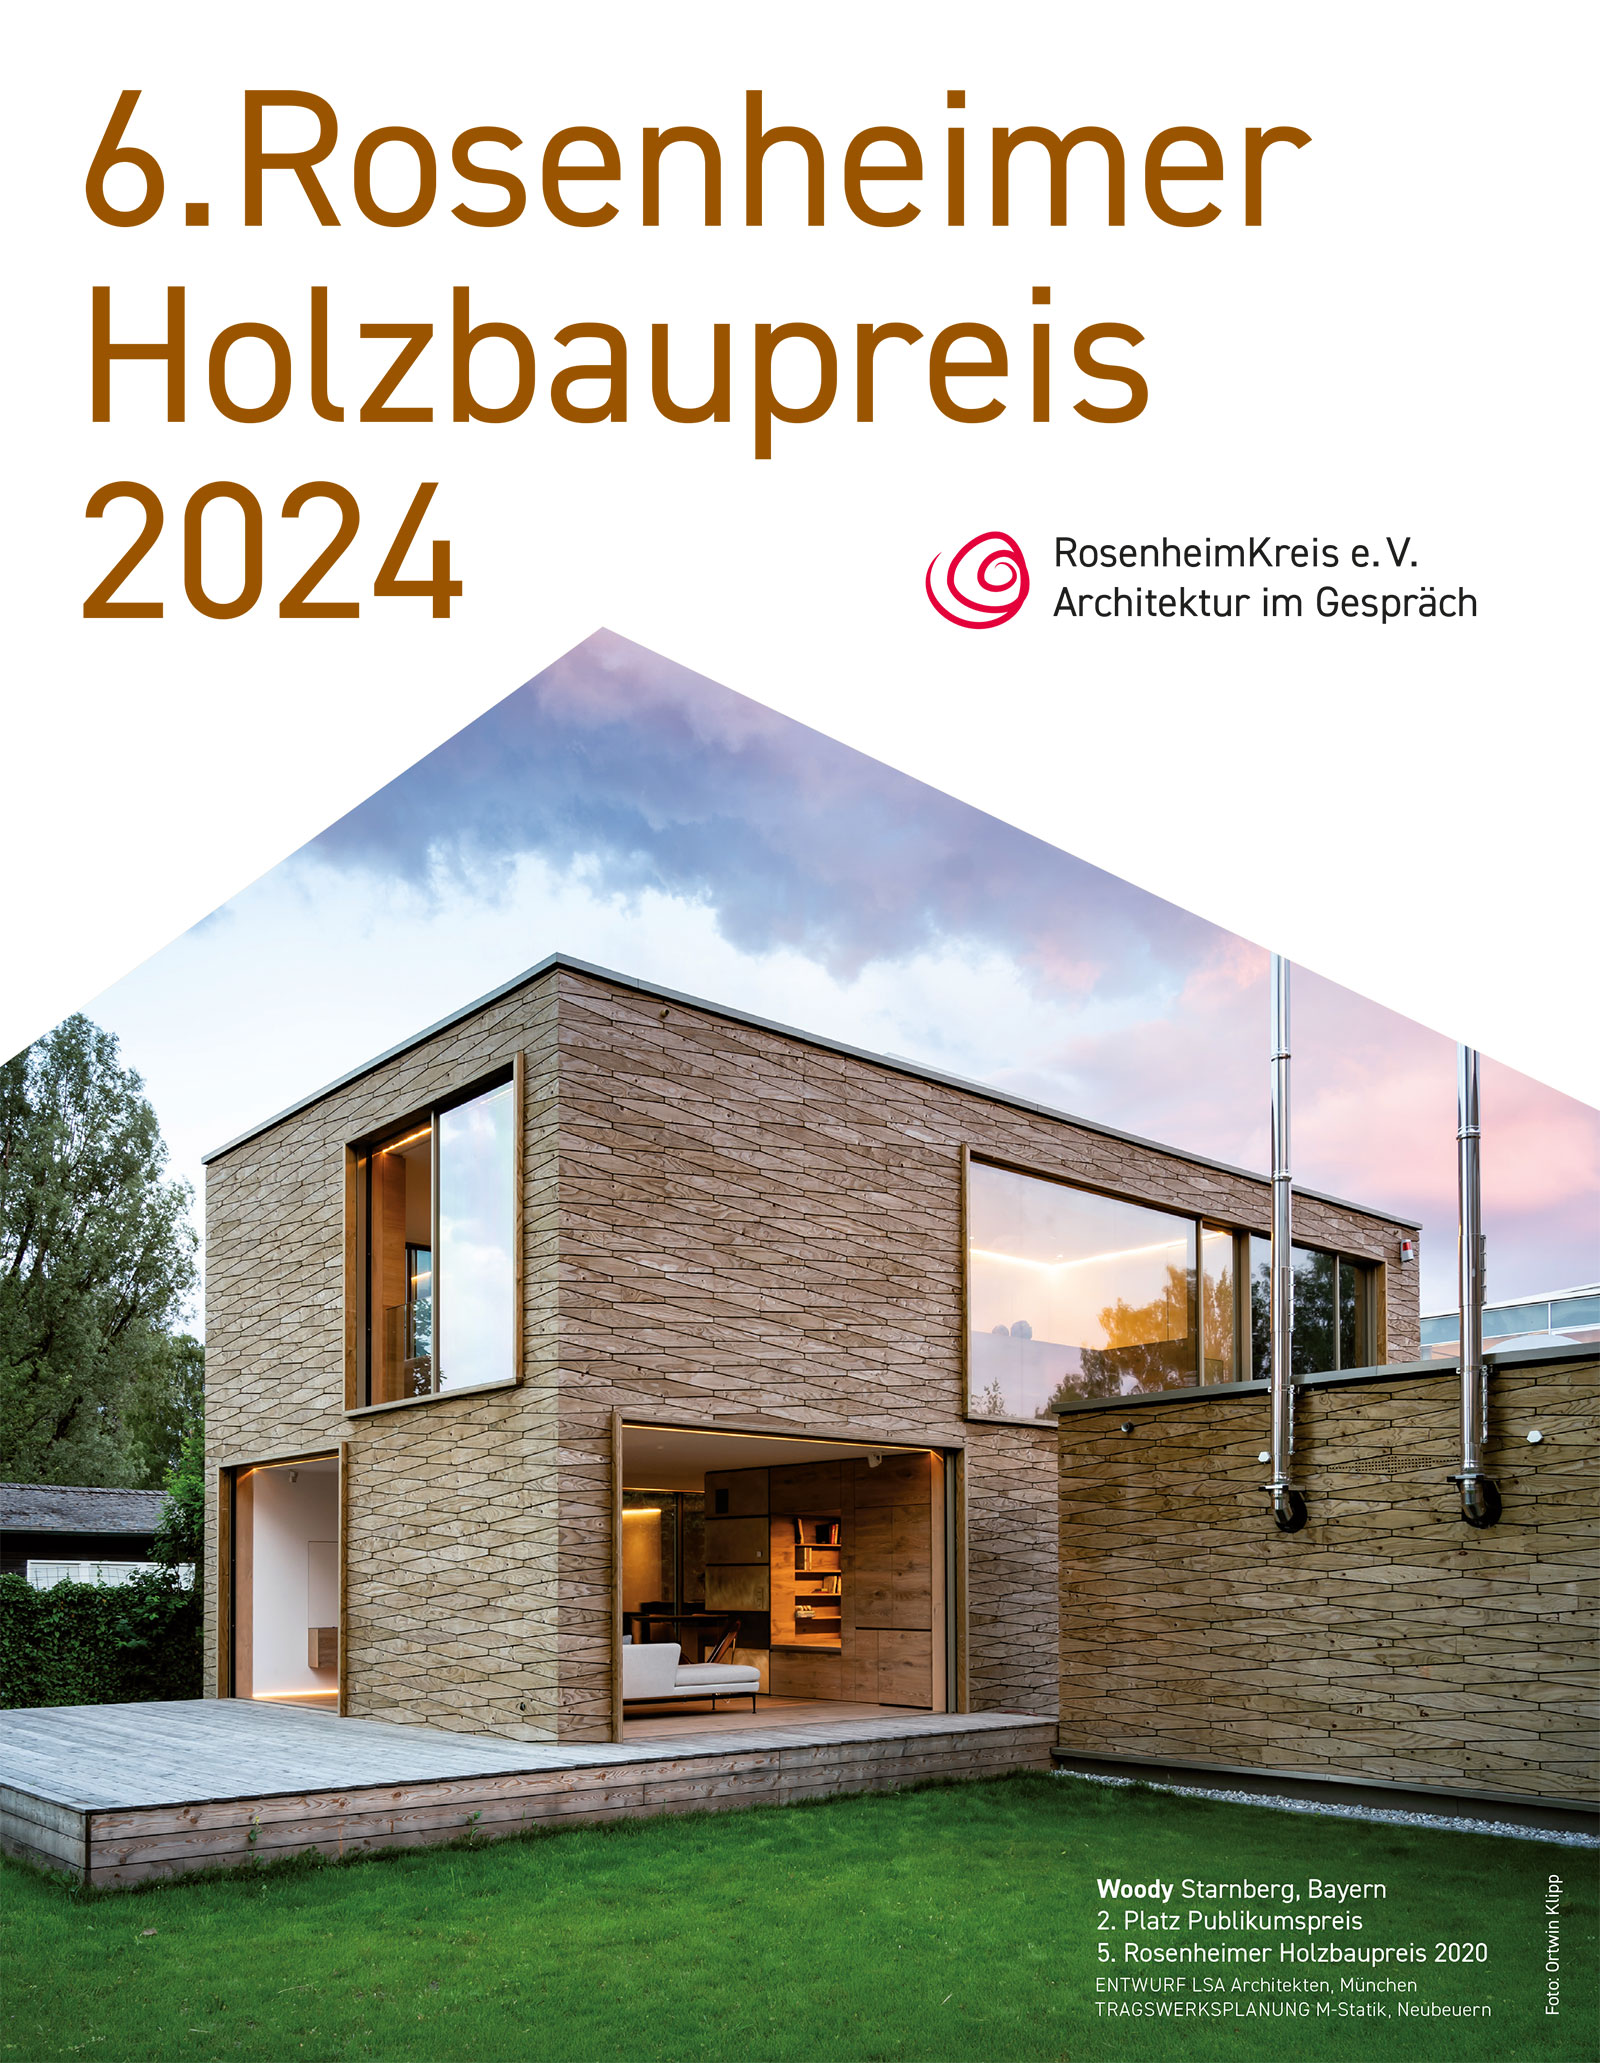 Titel der Auslobung zum 6. Rosenheimer Holzbaupreis 2024